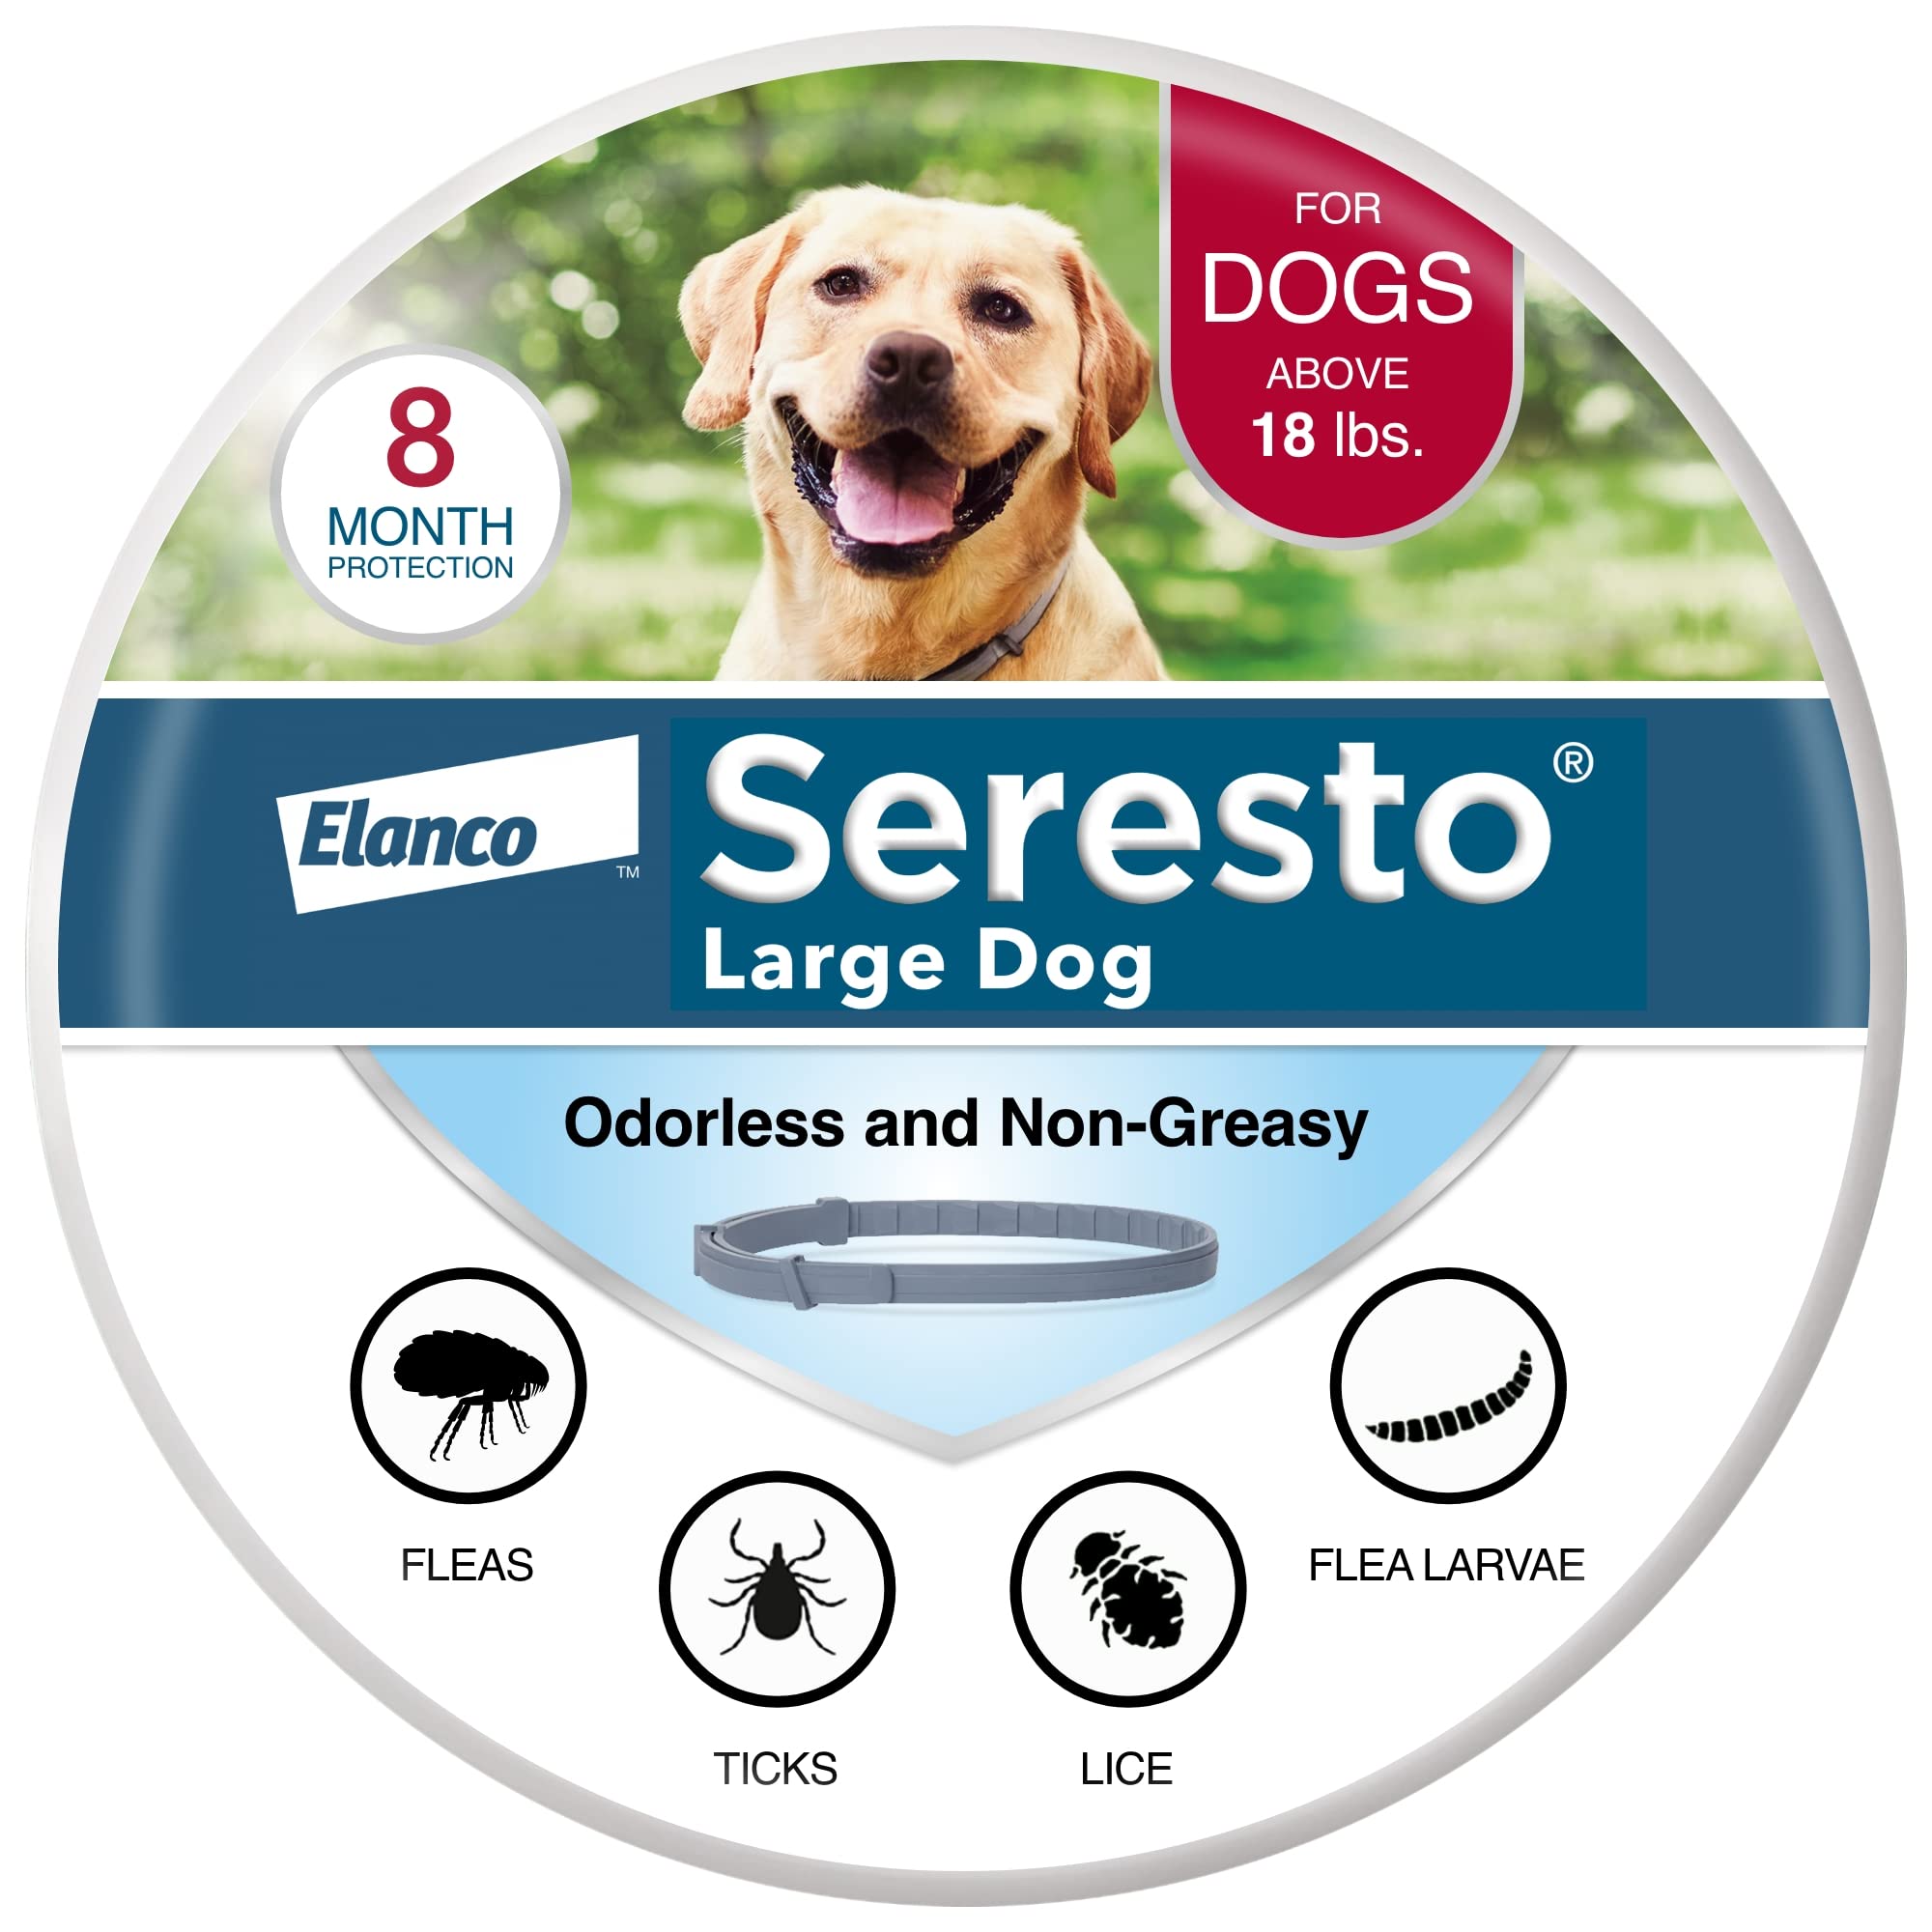 Seresto 대형견 수의사가 권장하는 18파운드 이상의 개를 위한 벼룩 및 진드기 치료 및 예방 ...